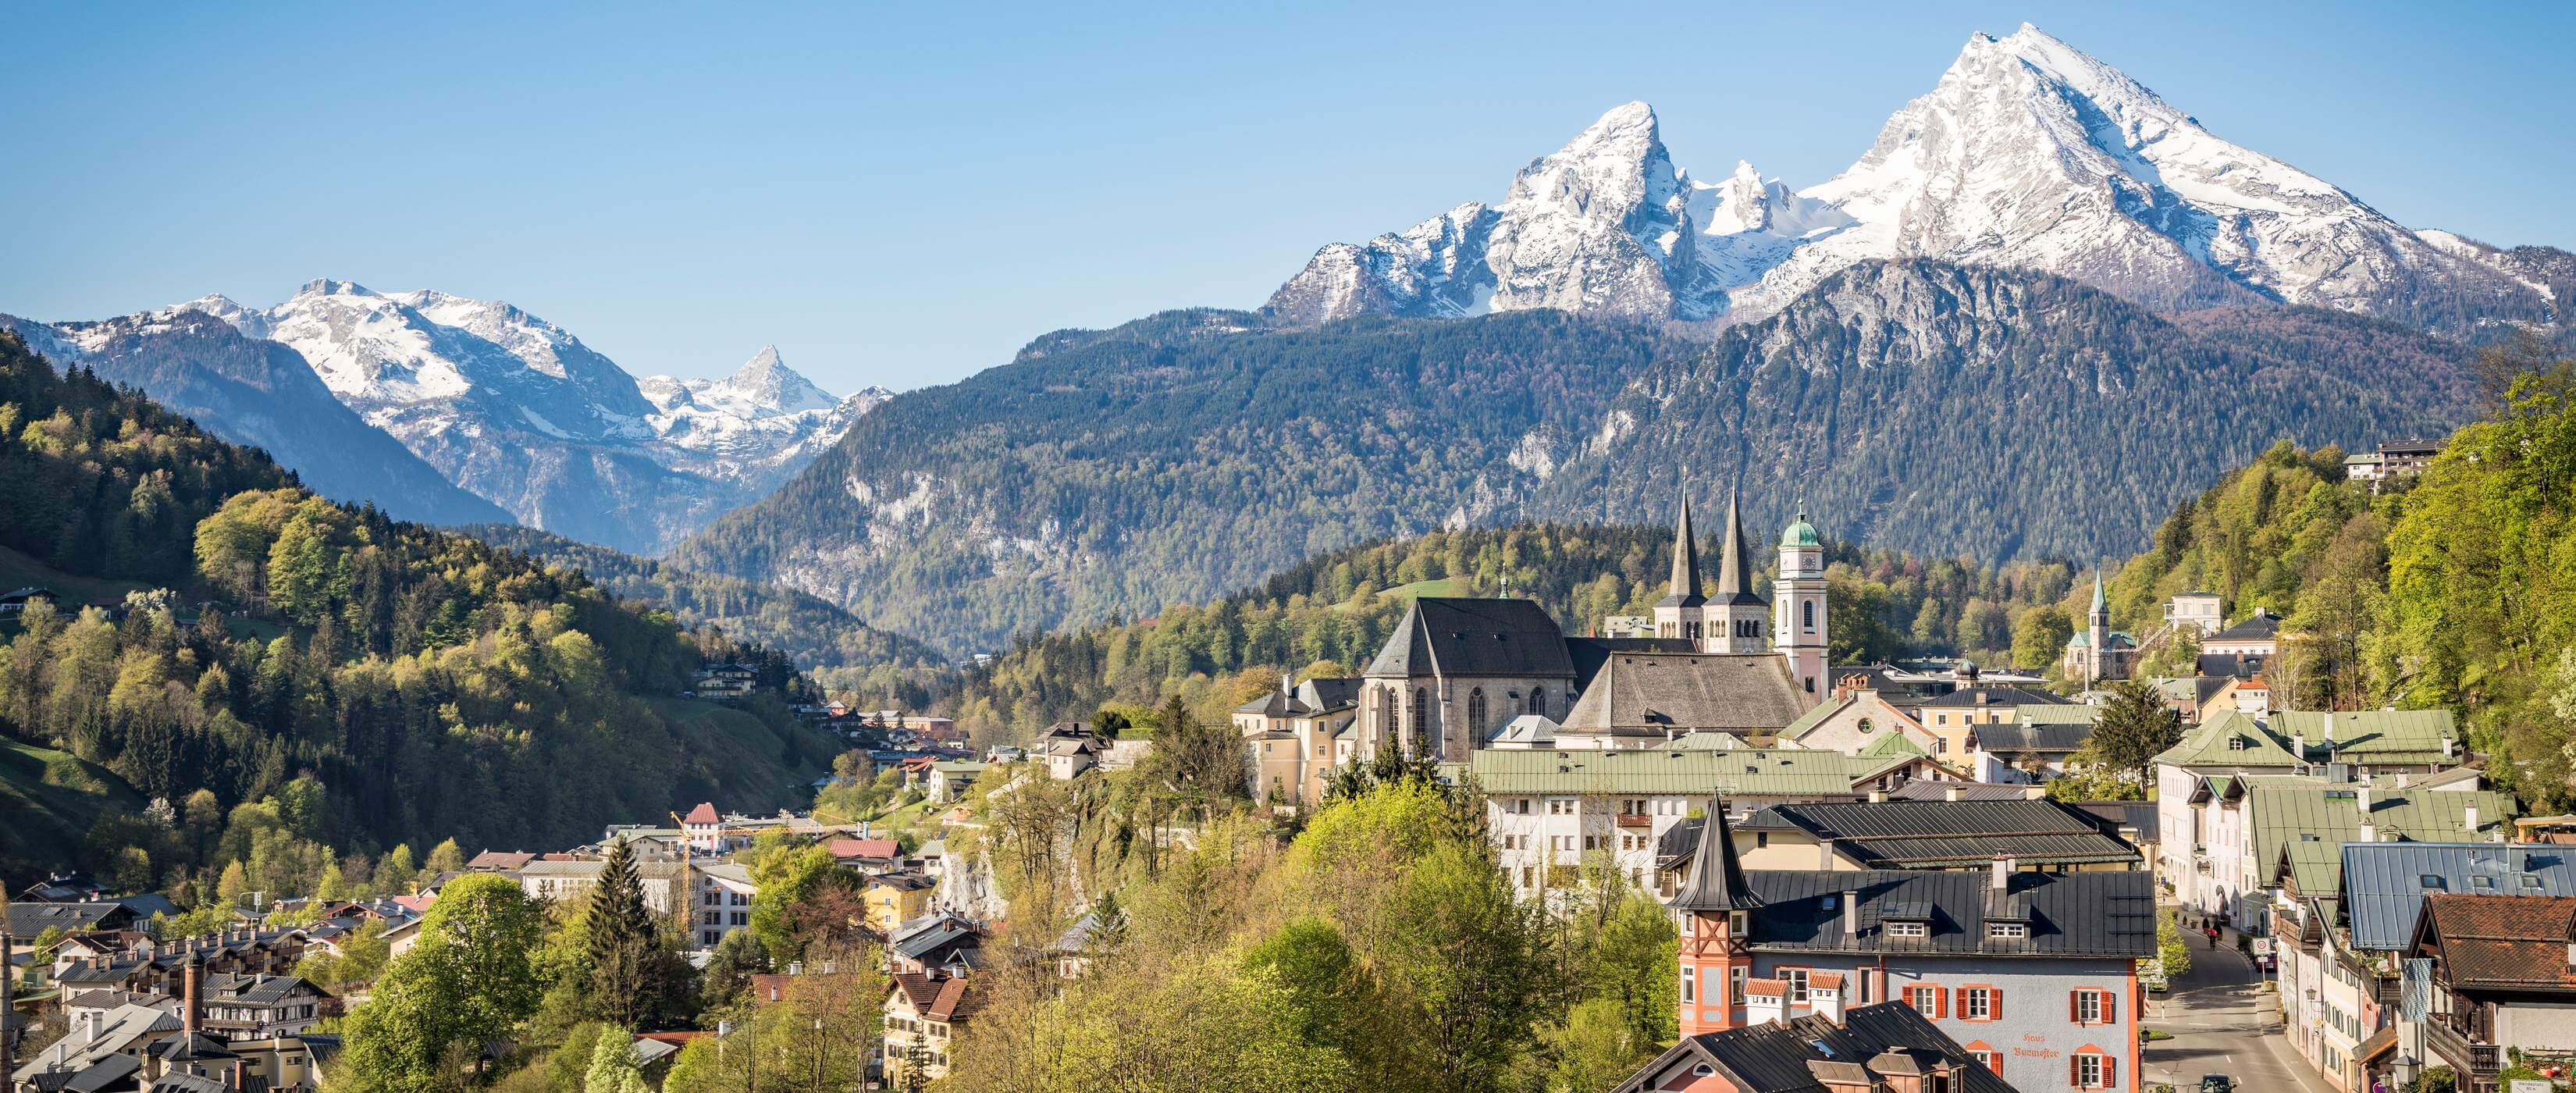 Foto Berchtesgaden und Watzmann  Berchtesgadener Land Tourismus - Lupe Reisen